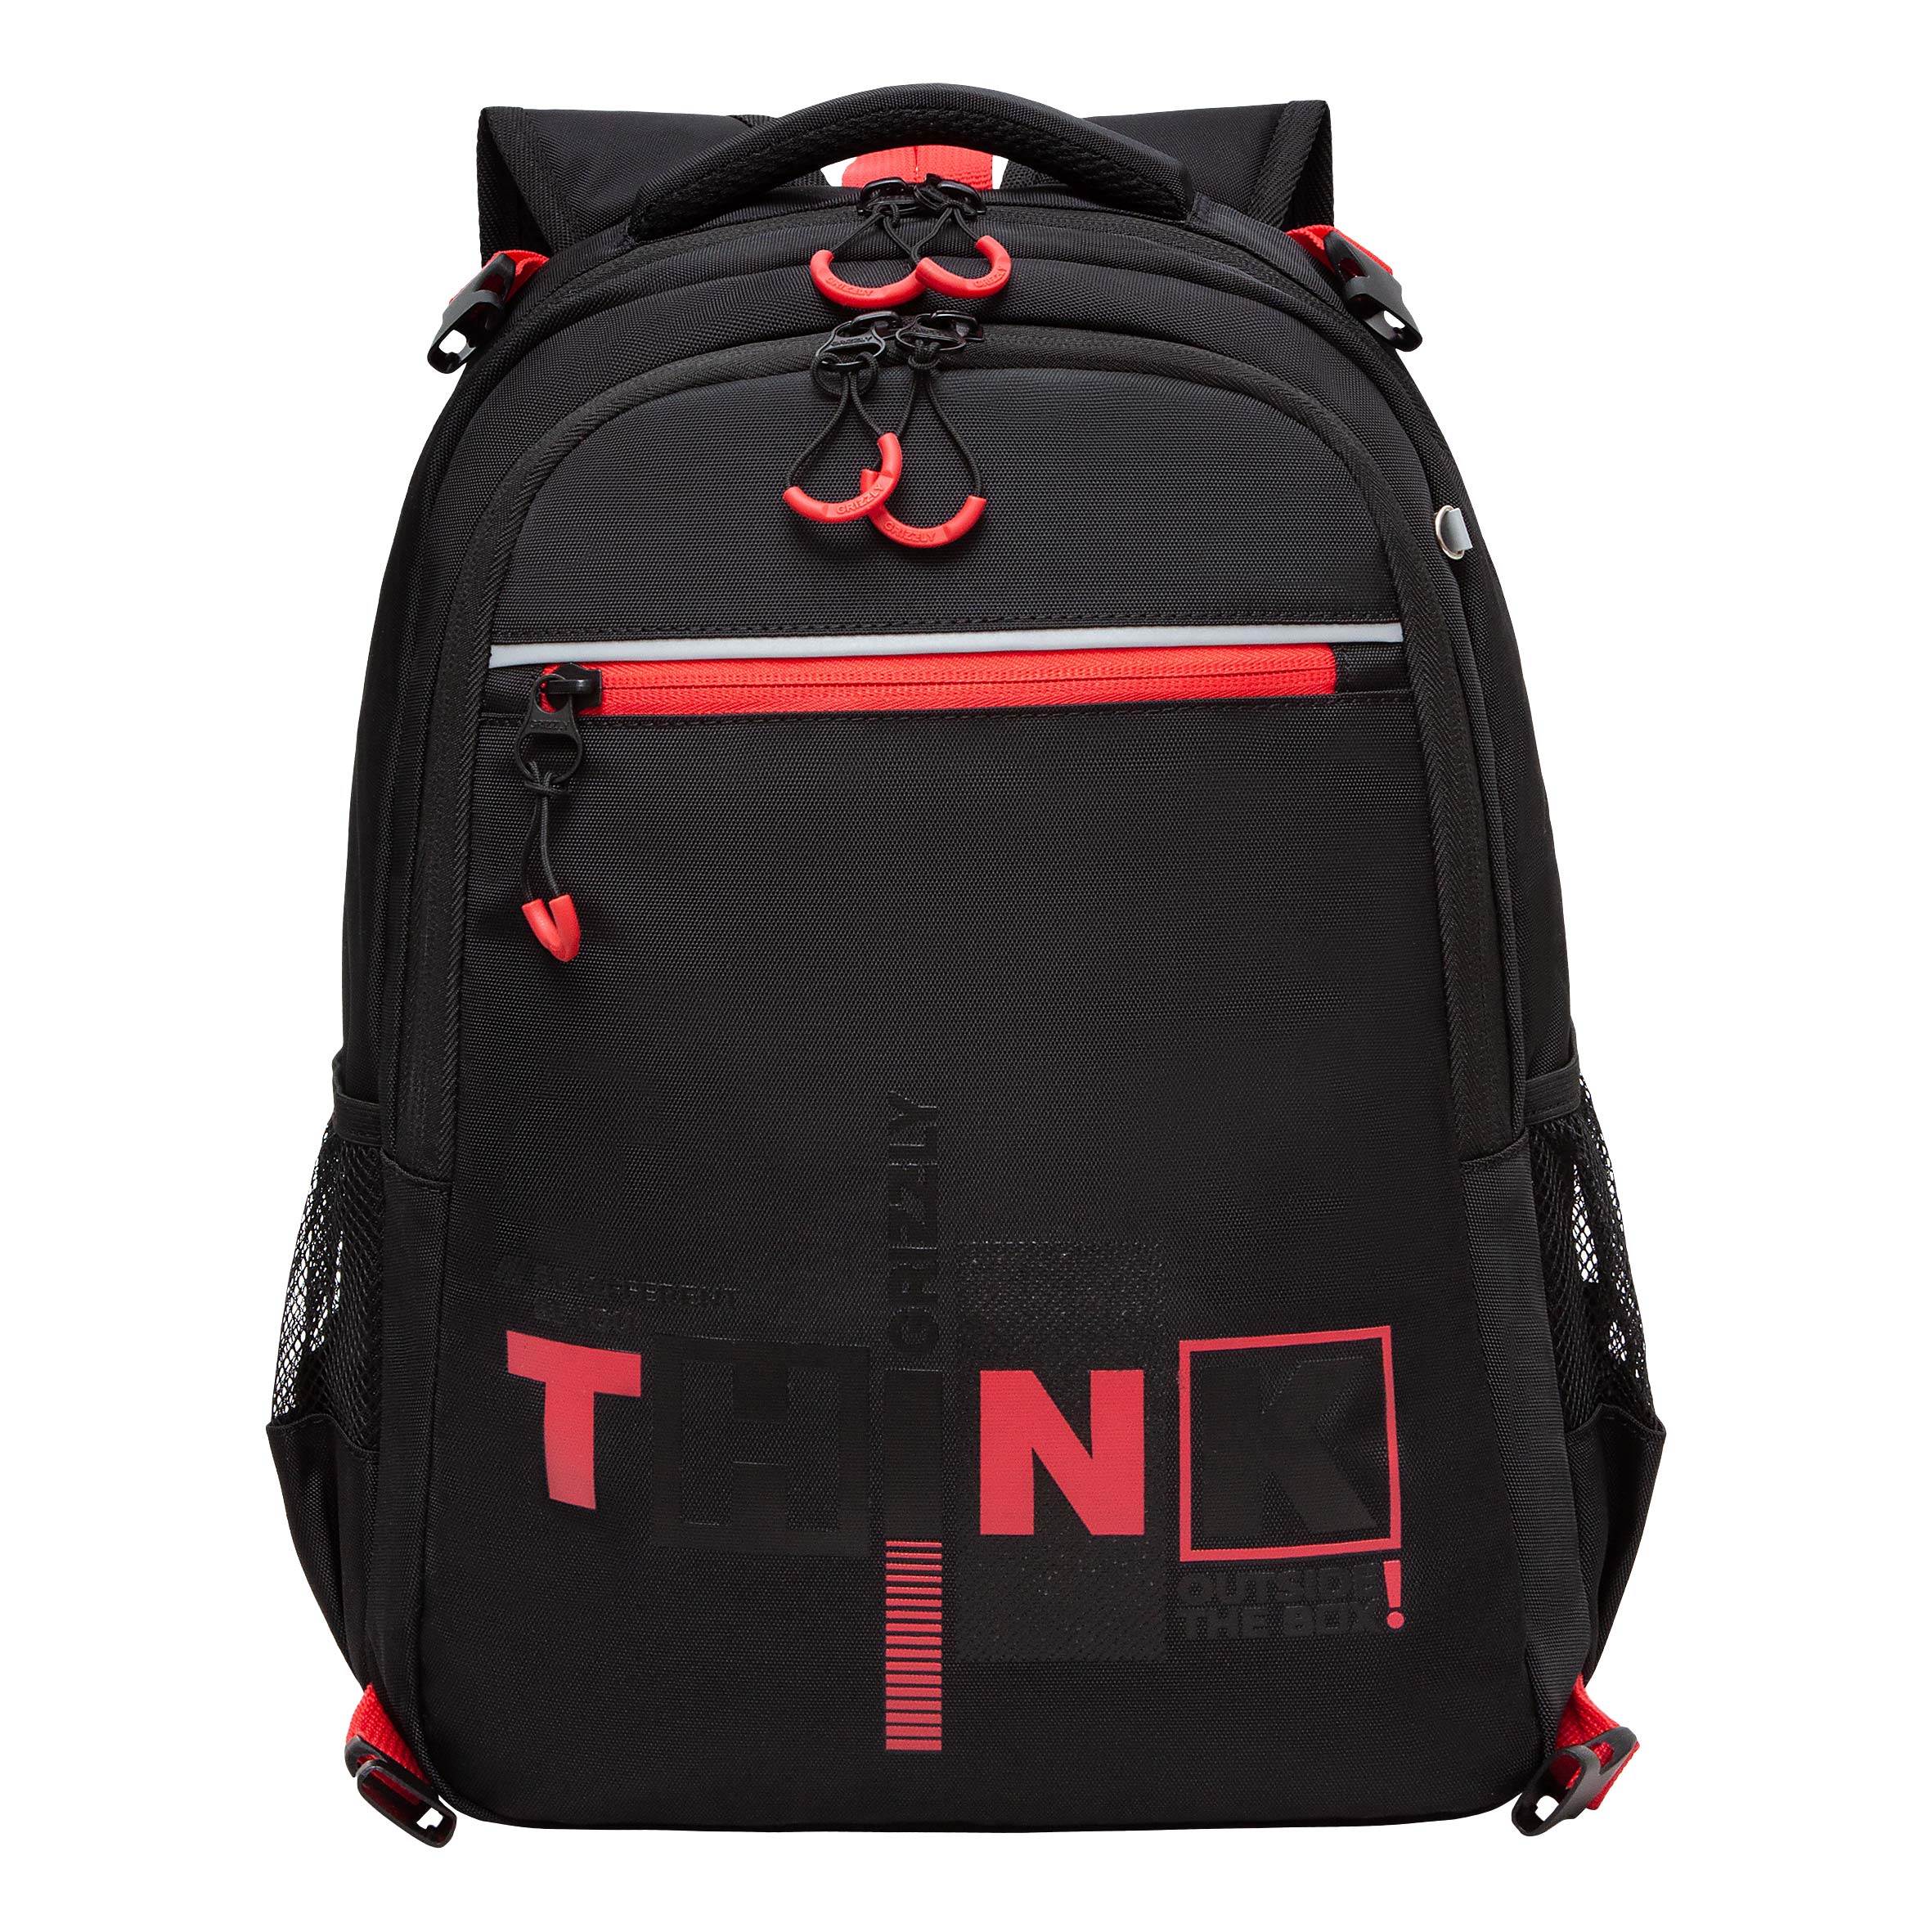 Рюкзак школьный GRIZZLY в комплекте с мешком для обуви или формы, для мальчика, RB-458-1/2